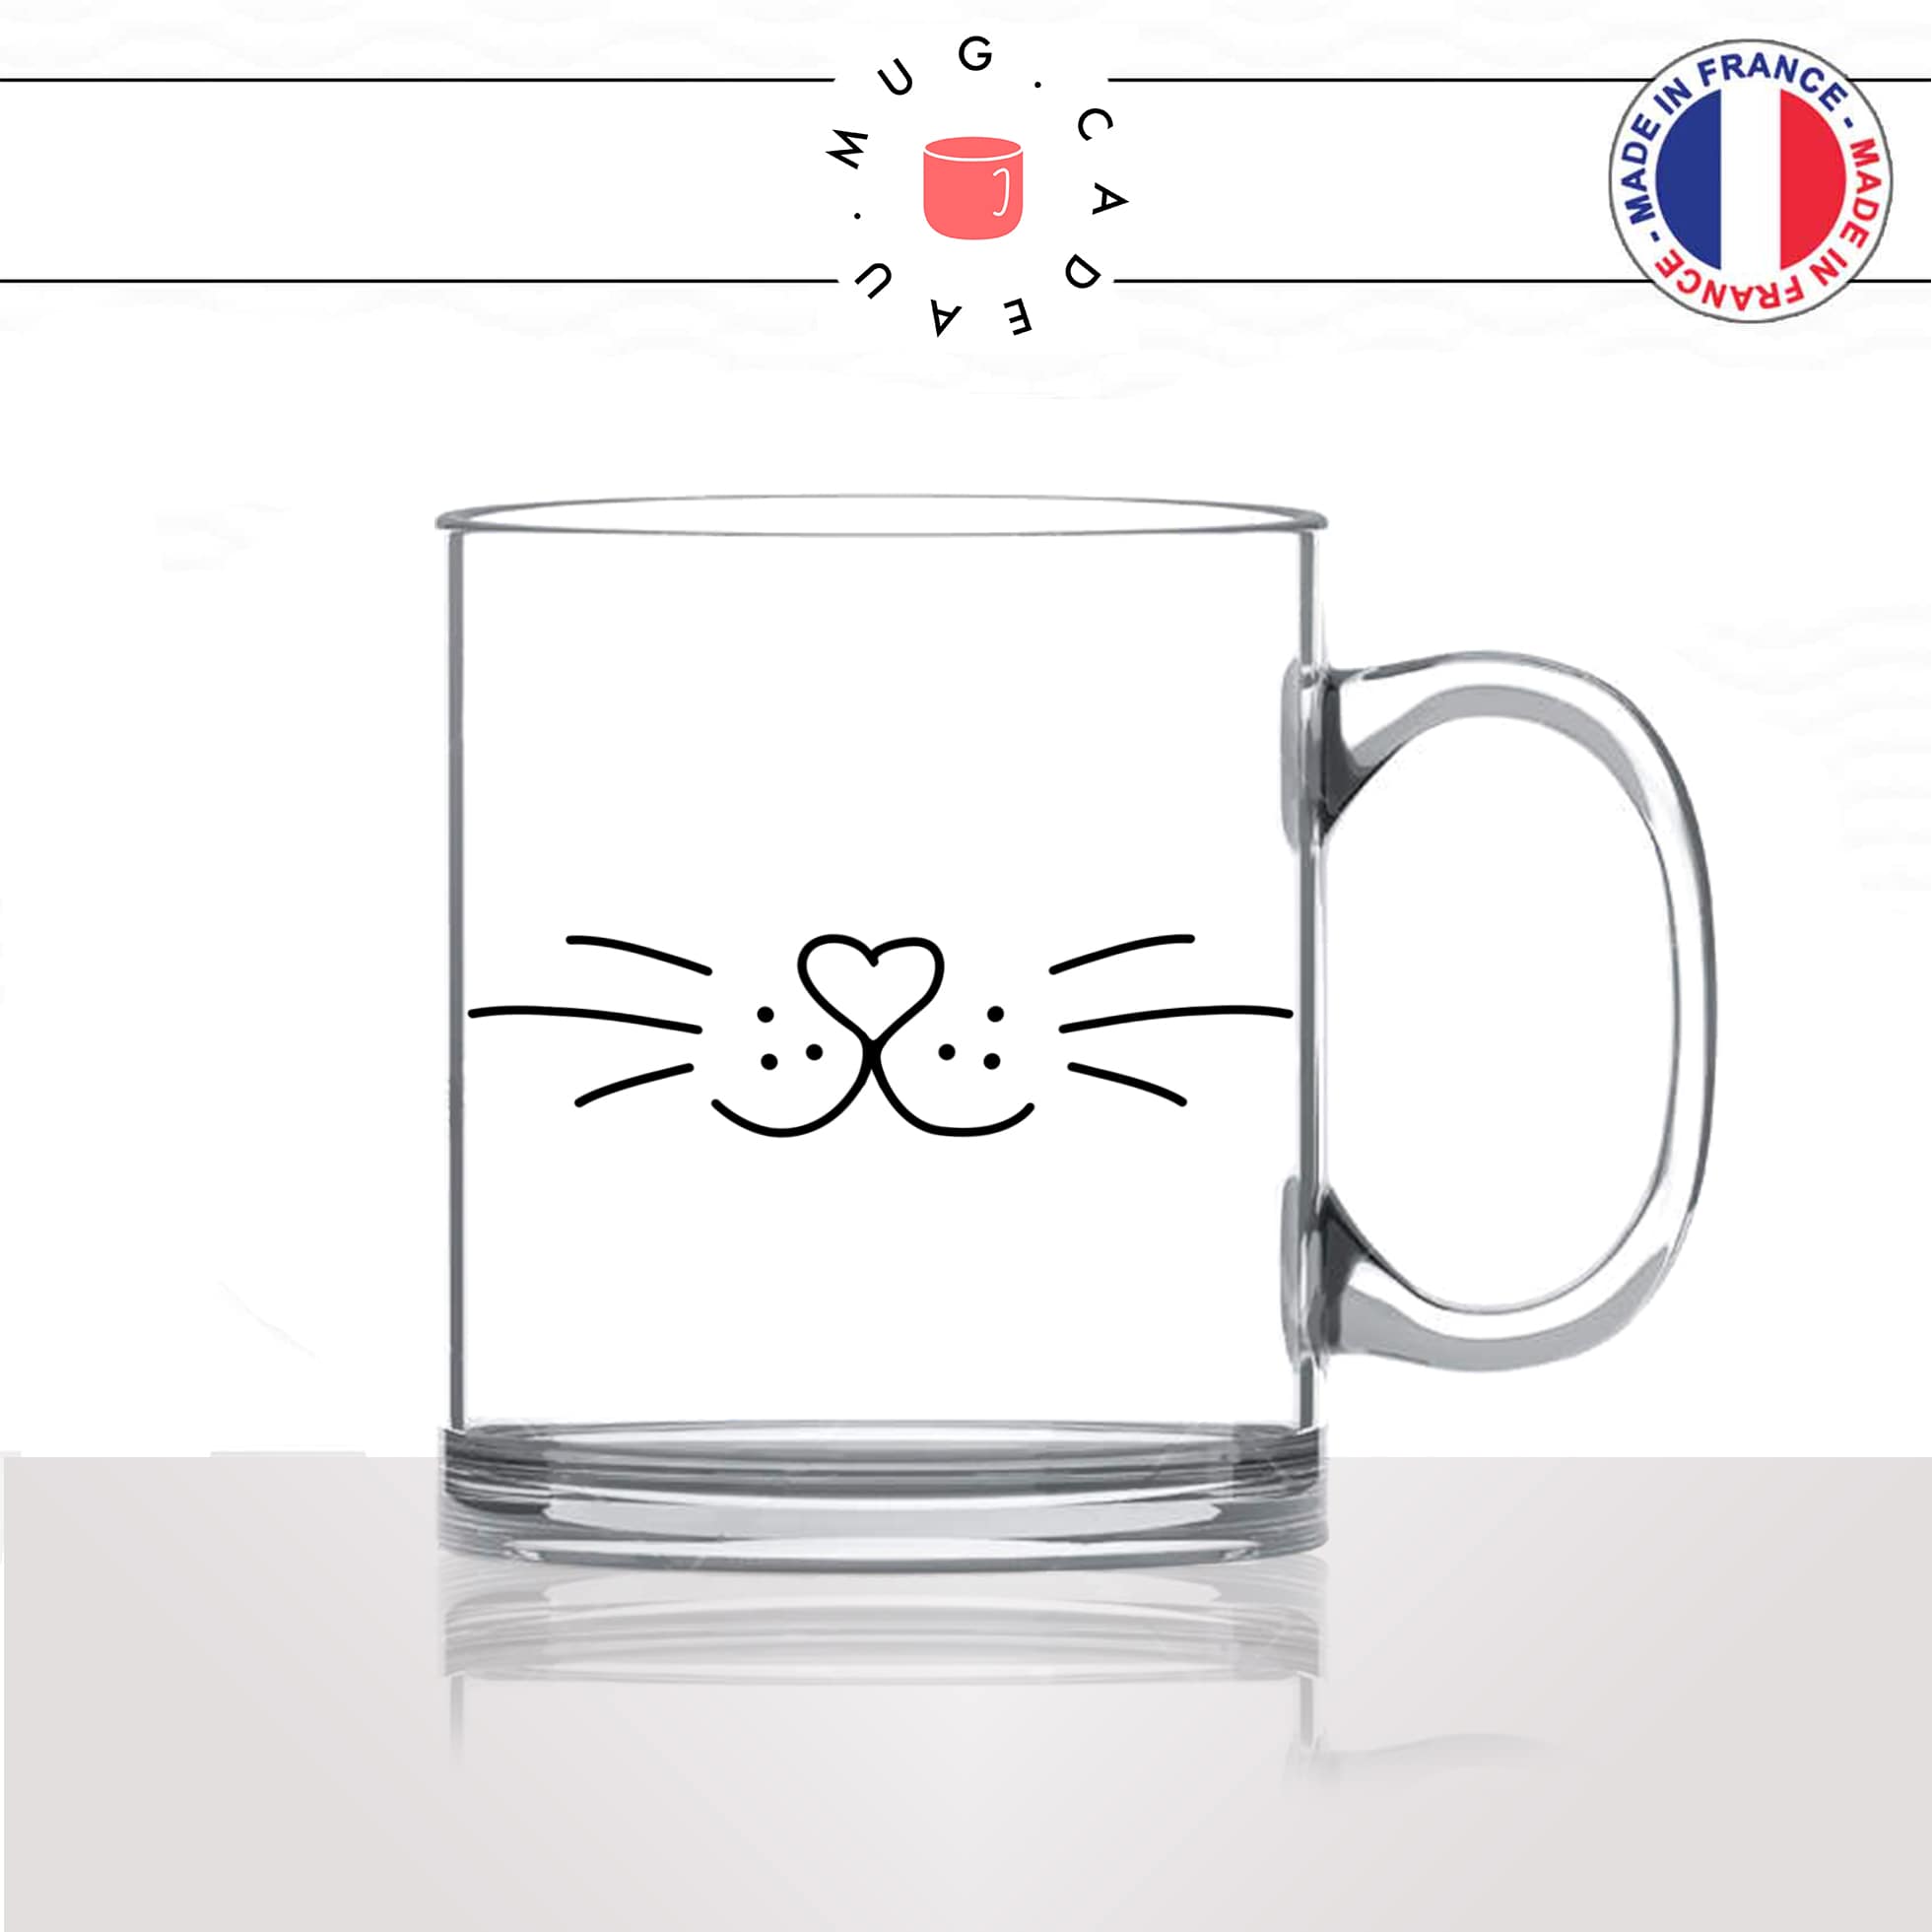 mug-tasse-en-verre-transparent-moustache-truffe-chats-animal-chaton-dessin-noir-fun-café-thé-idée-cadeau-original-personnalisé2-min